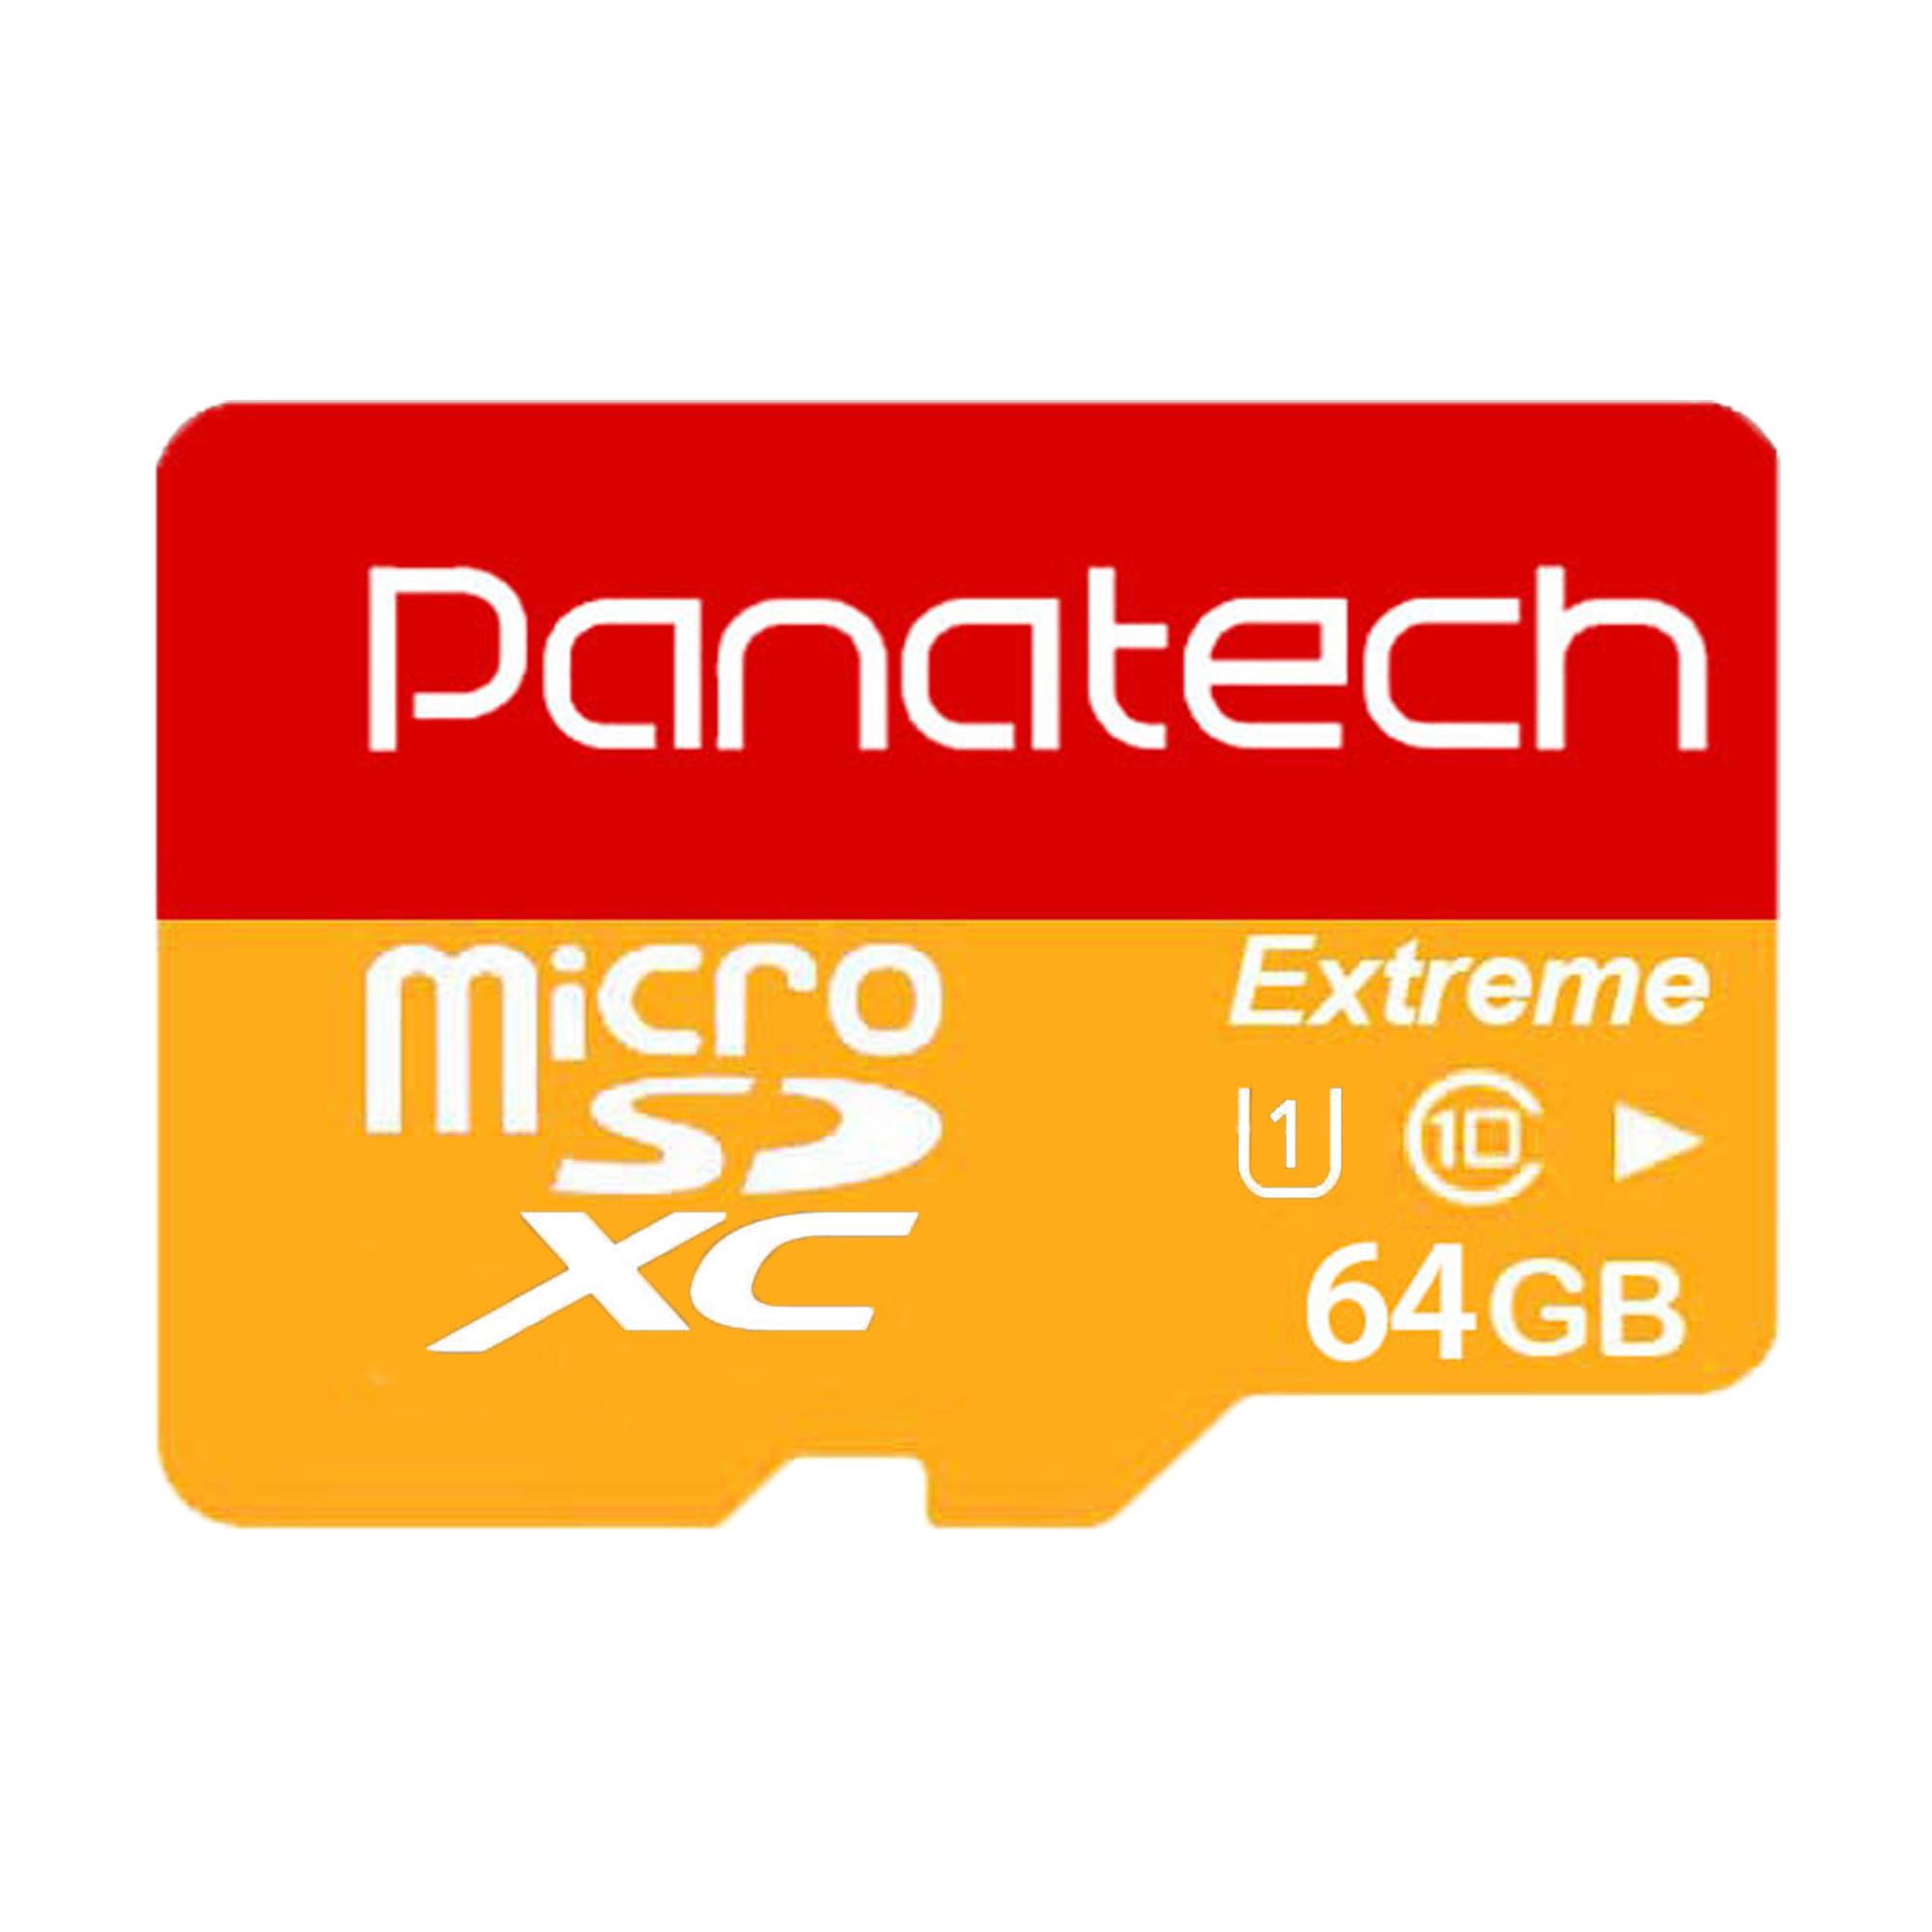 کارت حافظه microSDXC پاناتک مدل Extreme کلاس 10 استاندارد UHS-I U1 سرعت 30MBps ظرفیت 64 گیگابایت